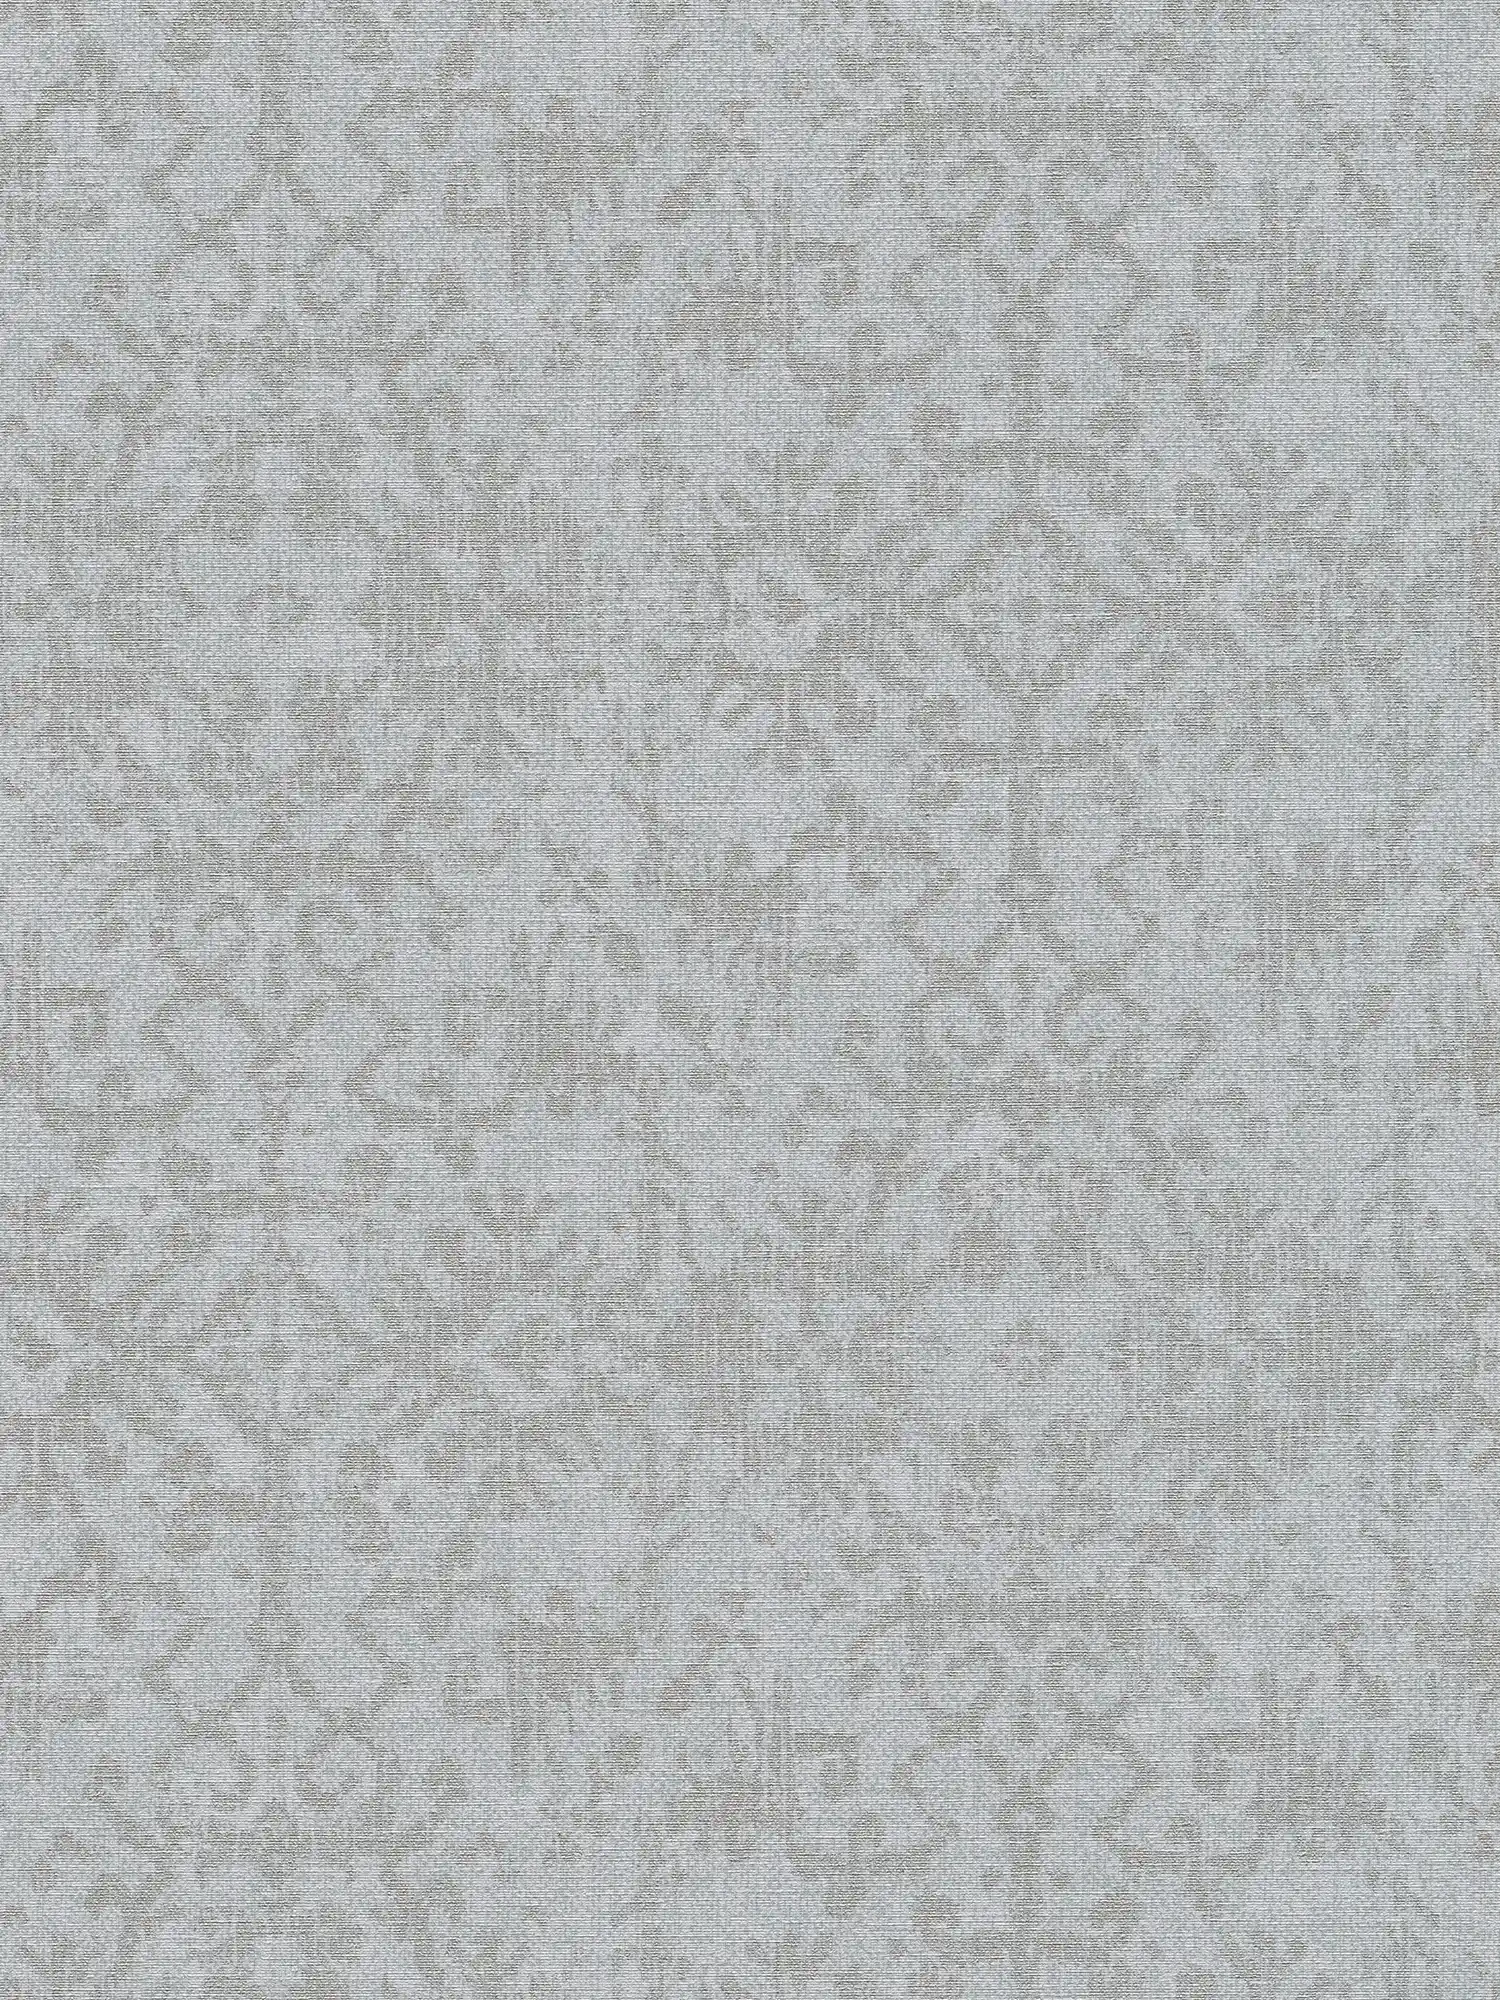 carta da parati in ottica tessile con motivi ornamentali etnici - grigio
